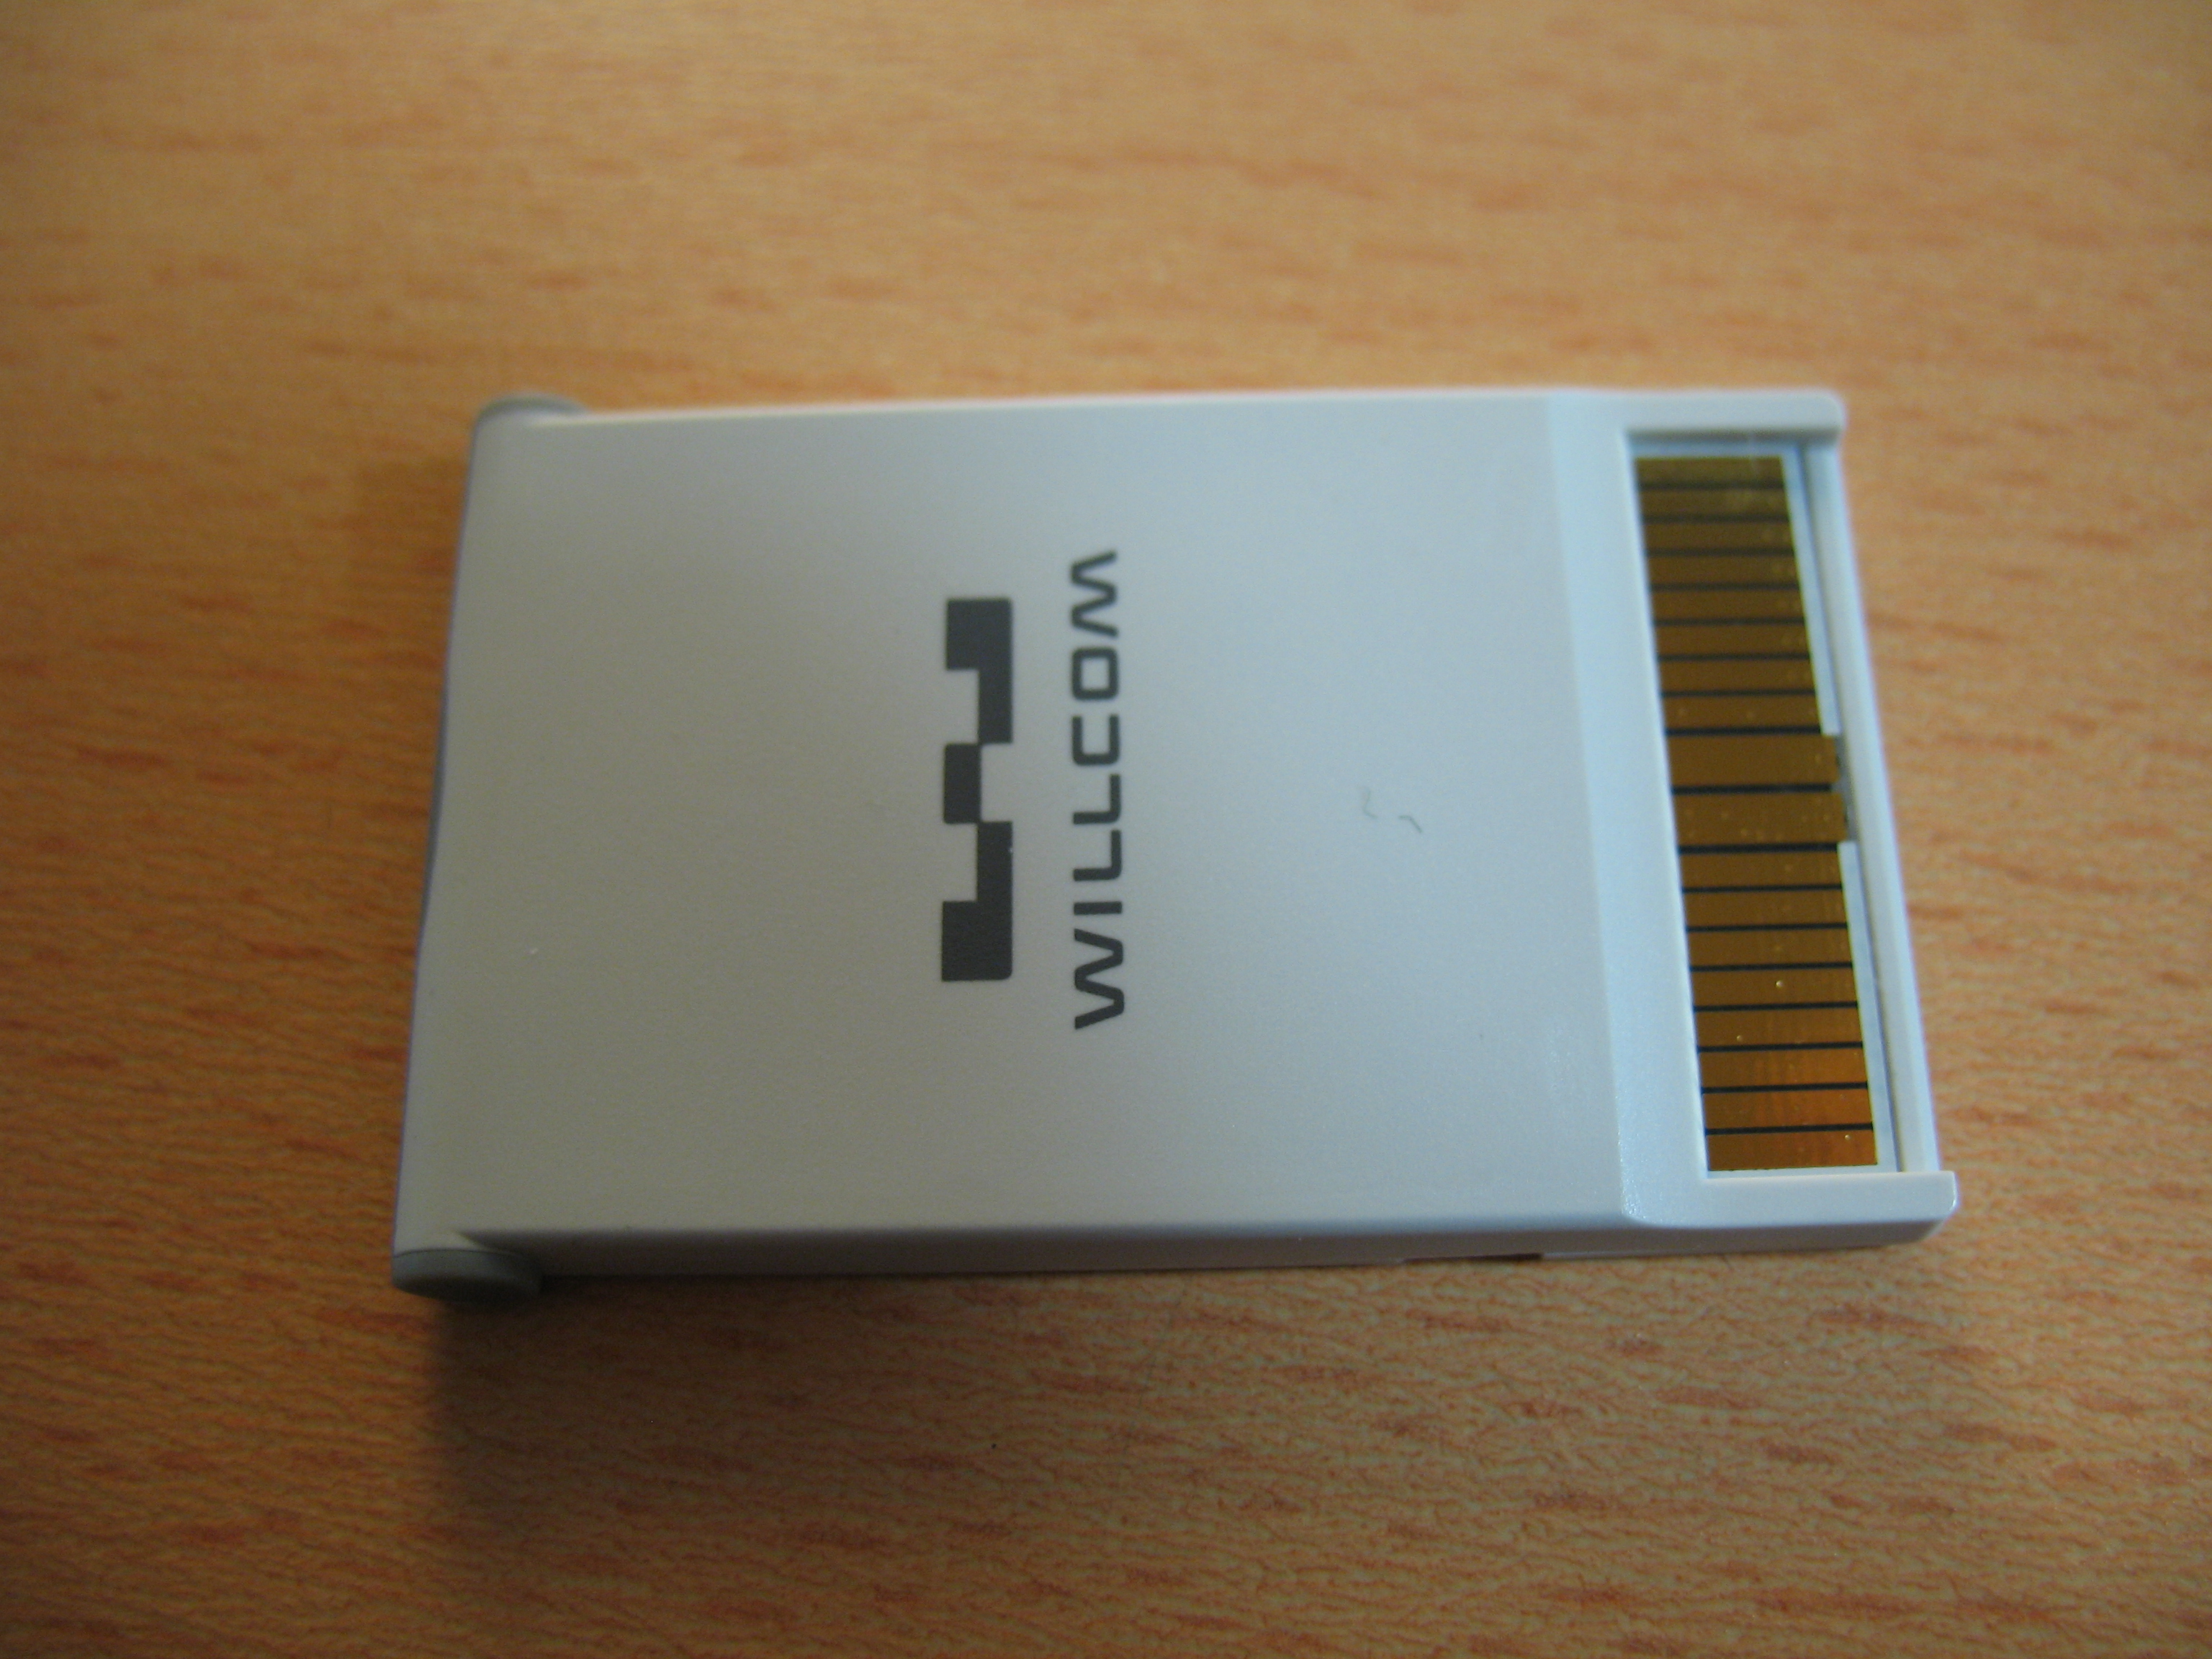 ウィルコム「W-ZERO3」のSIMカード